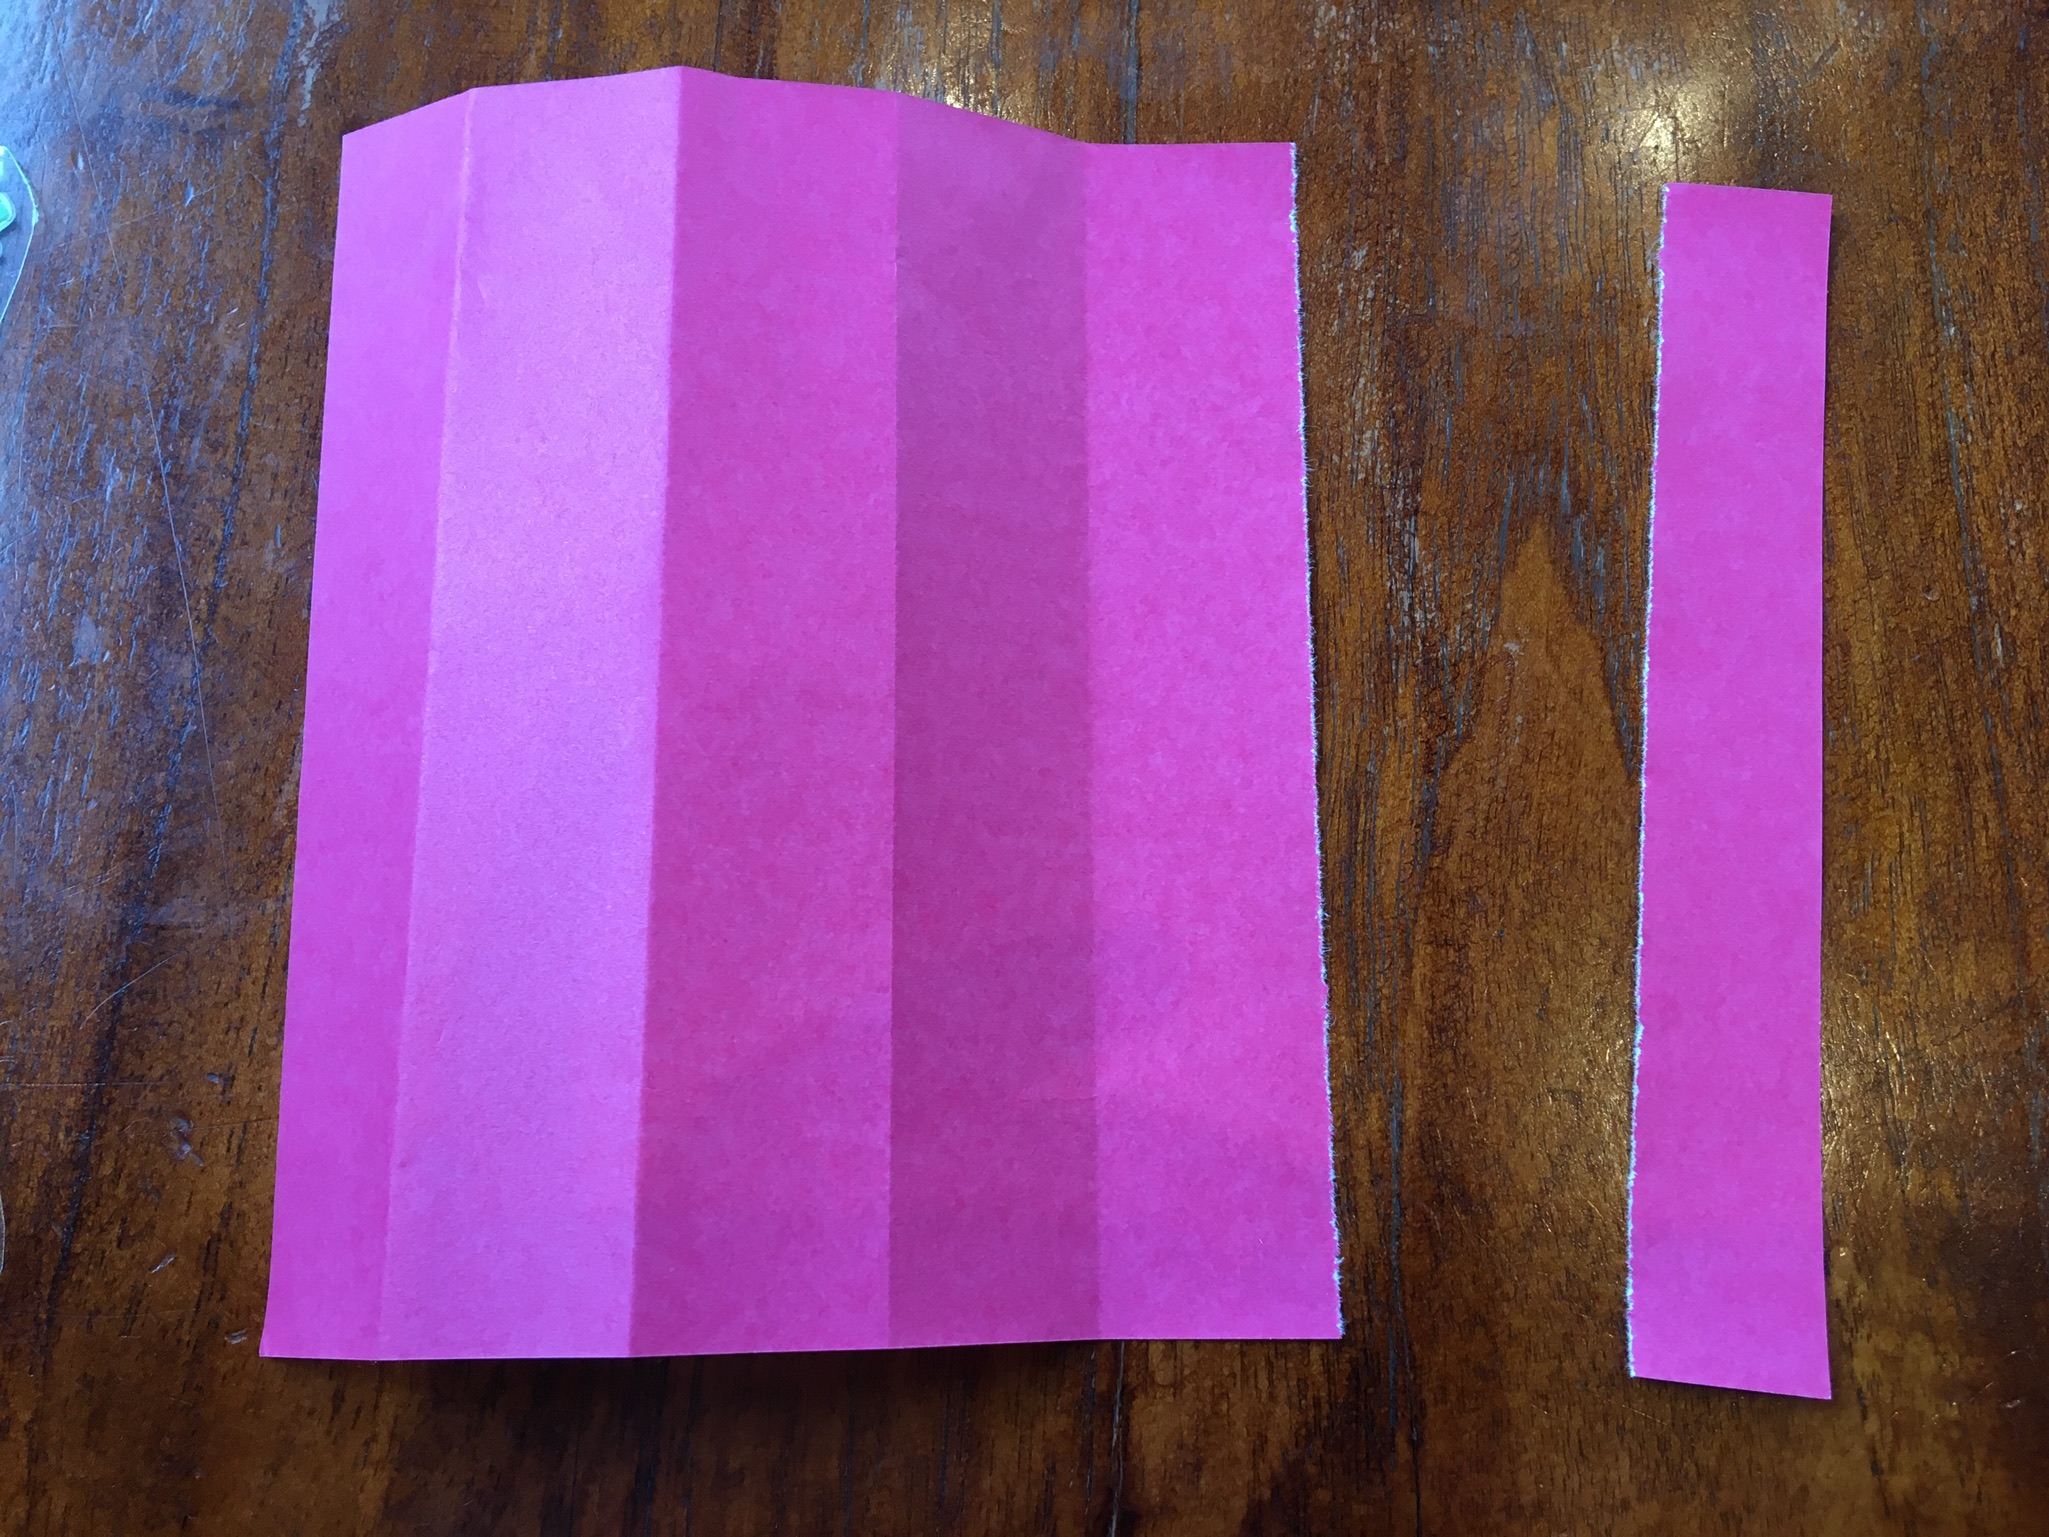 あじさい製作ー１歳児 ２歳児 ３歳児向け 折り紙と画用紙で簡単製作ー